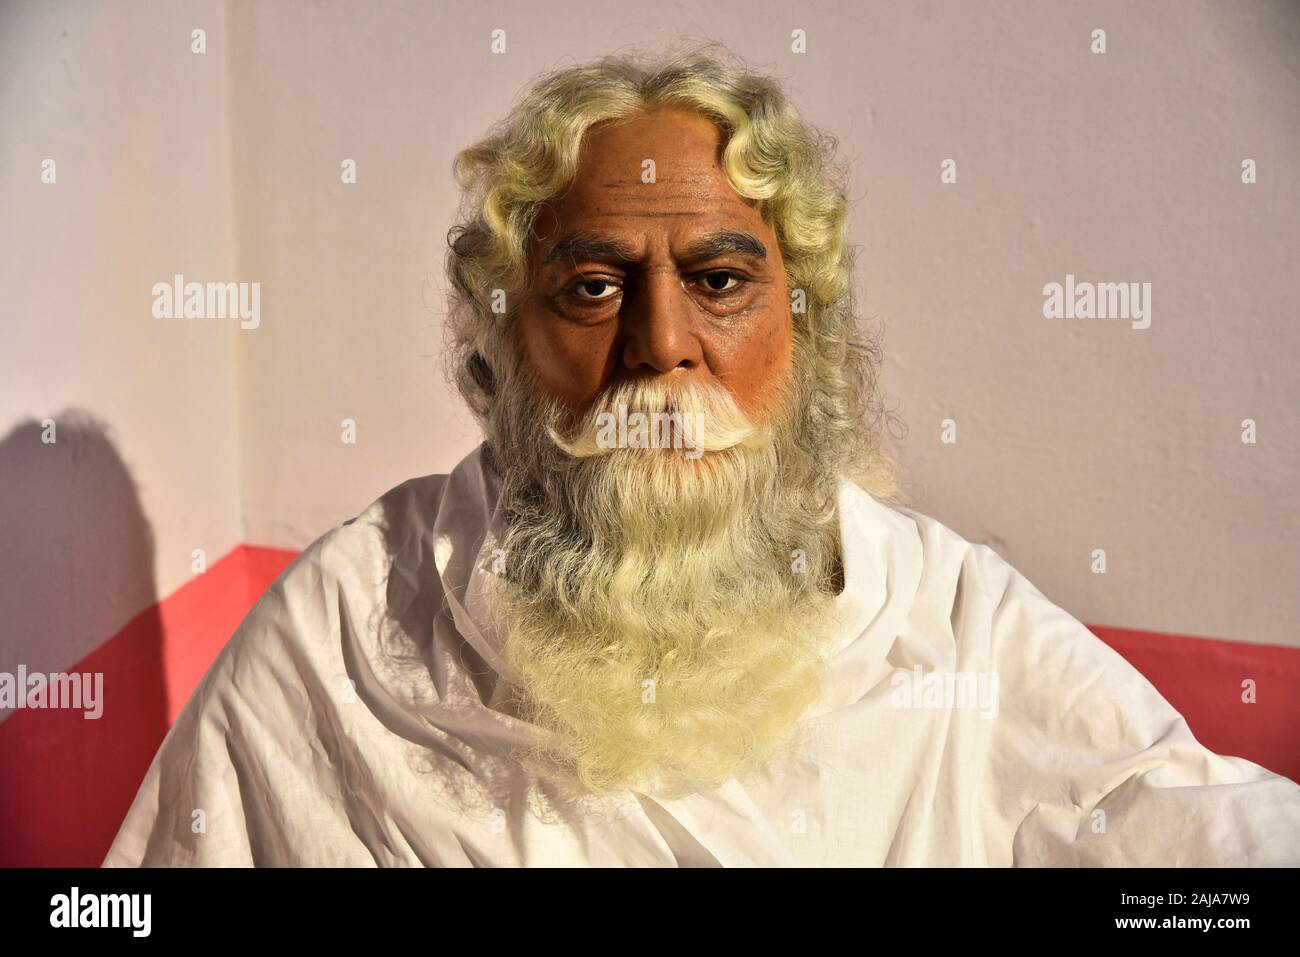 Statue de cire de Rabindranath Tagore, Prix Nobel de la poète qui a écrit l'hymne national de l'Inde,sunil's Wax Museum,trivandrum kerala,Inde, Banque D'Images